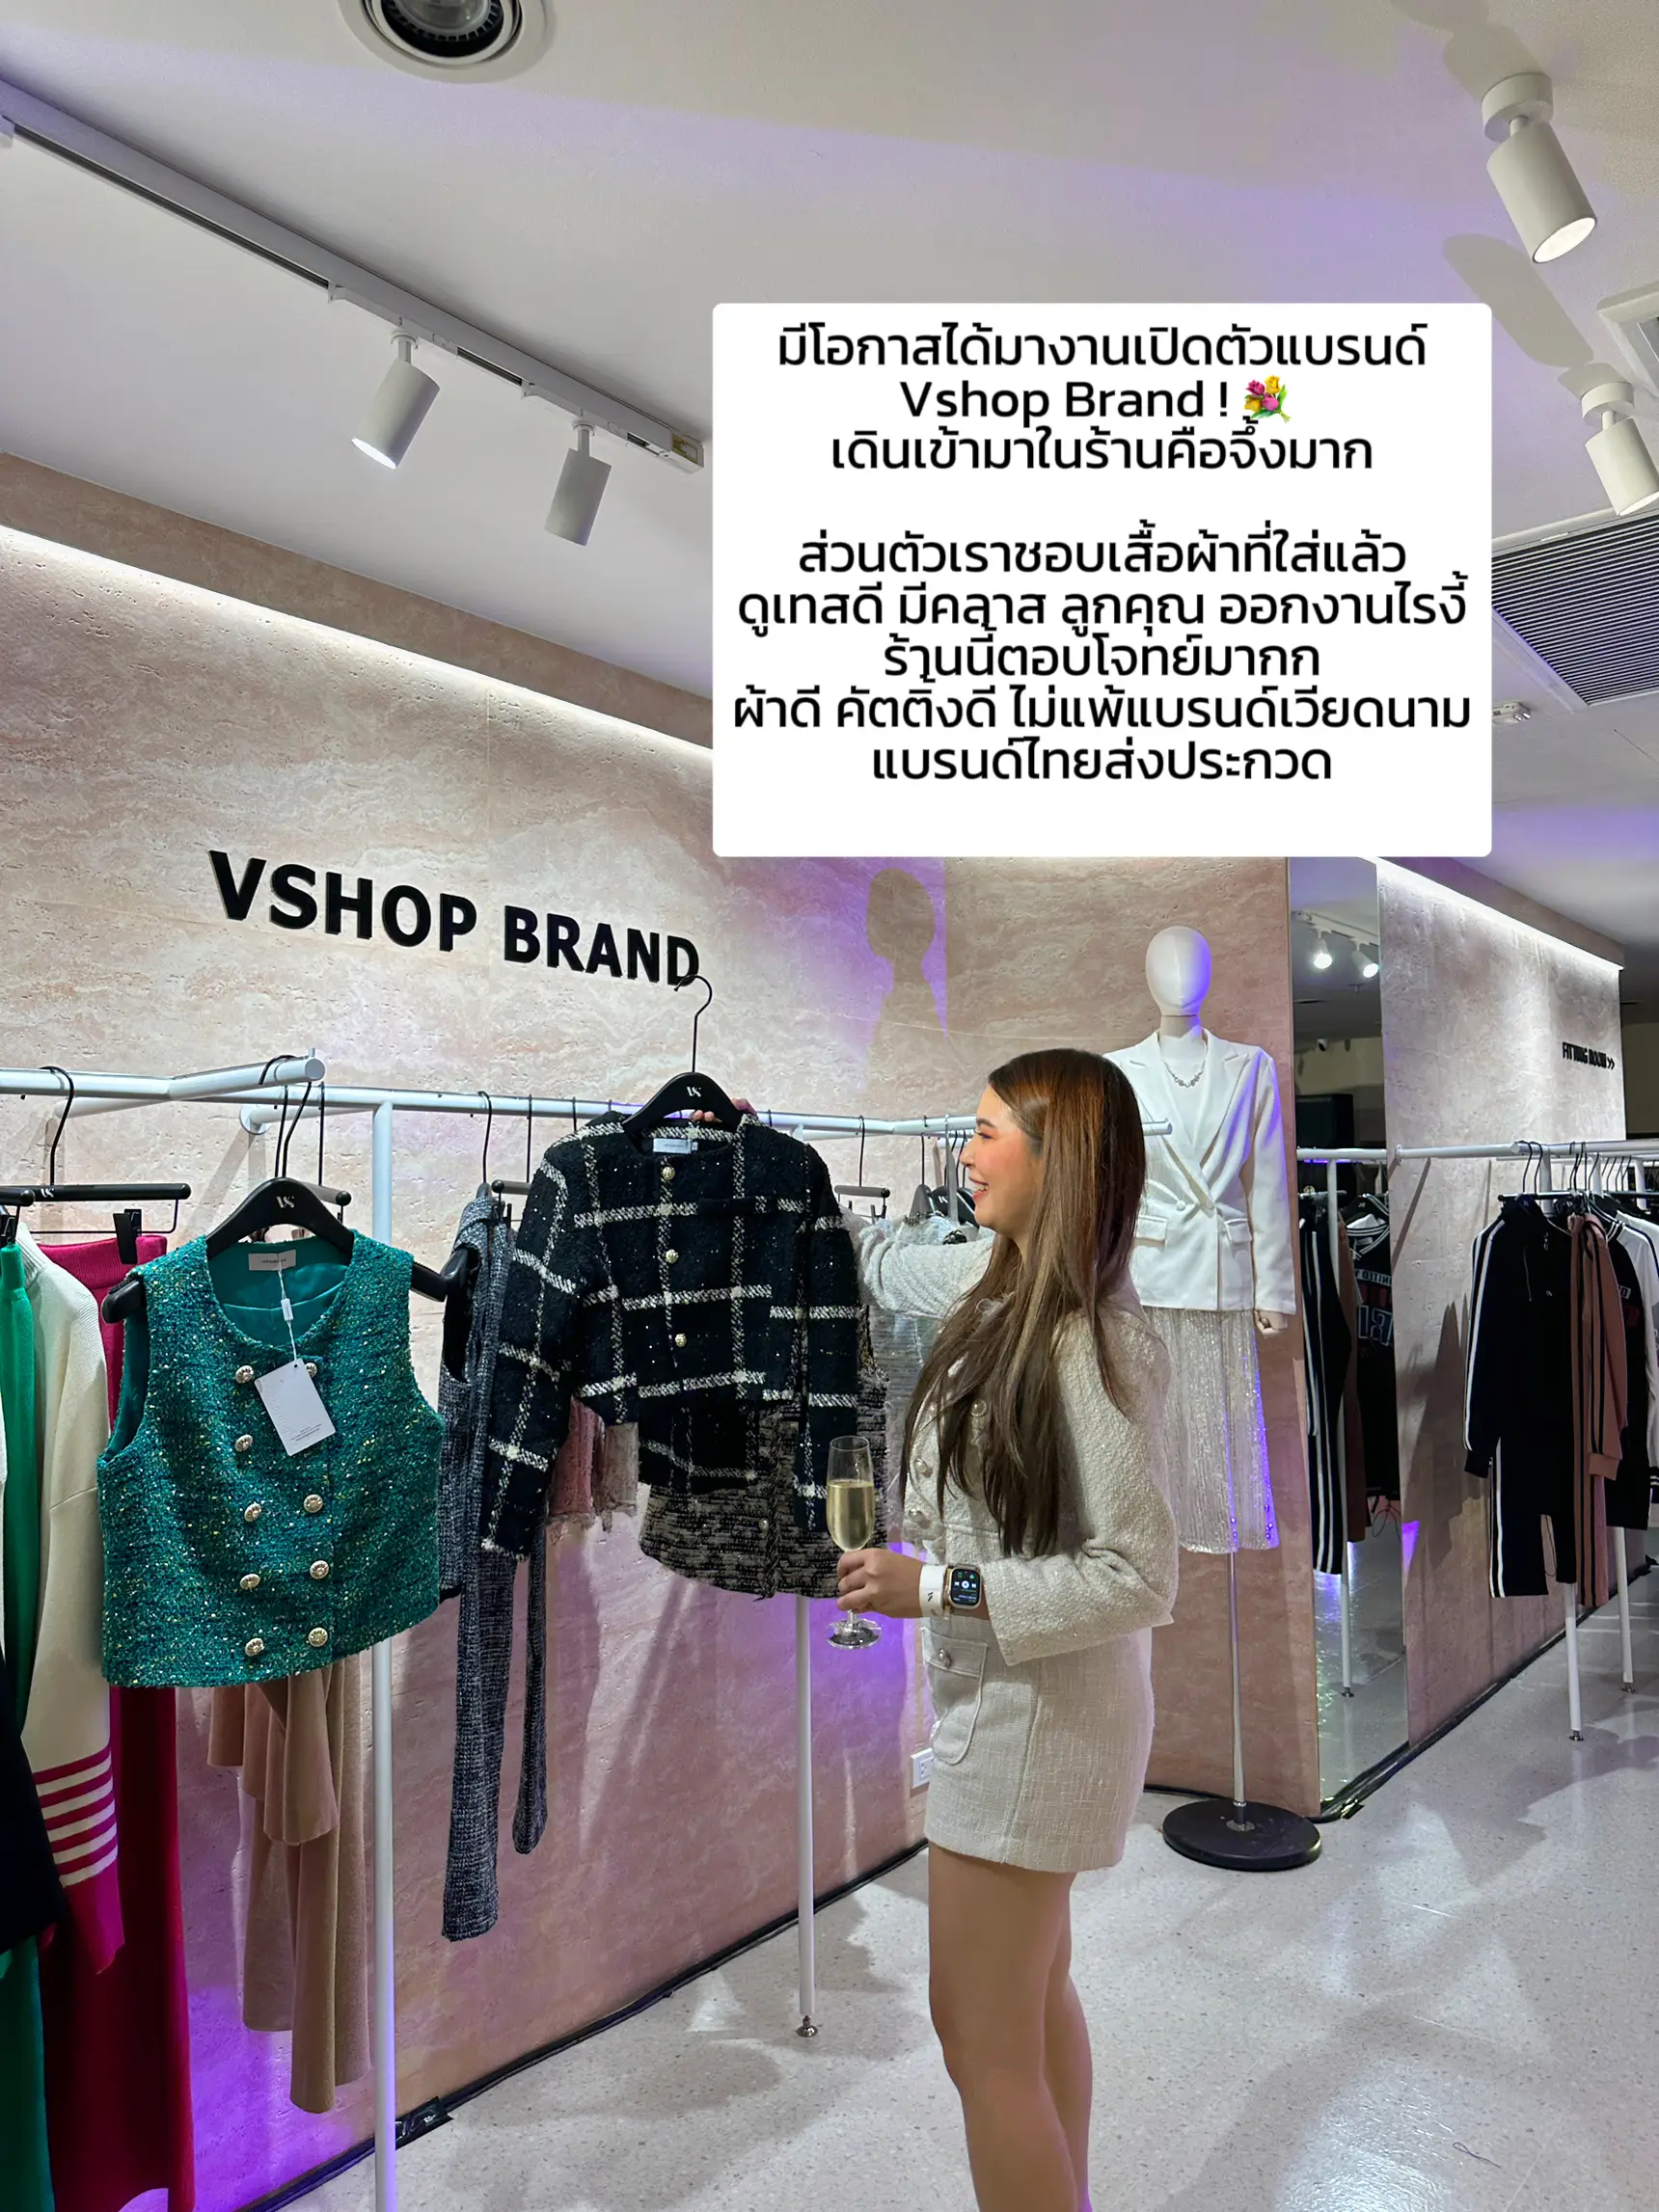 VShop Store - Architect - V Shop Store